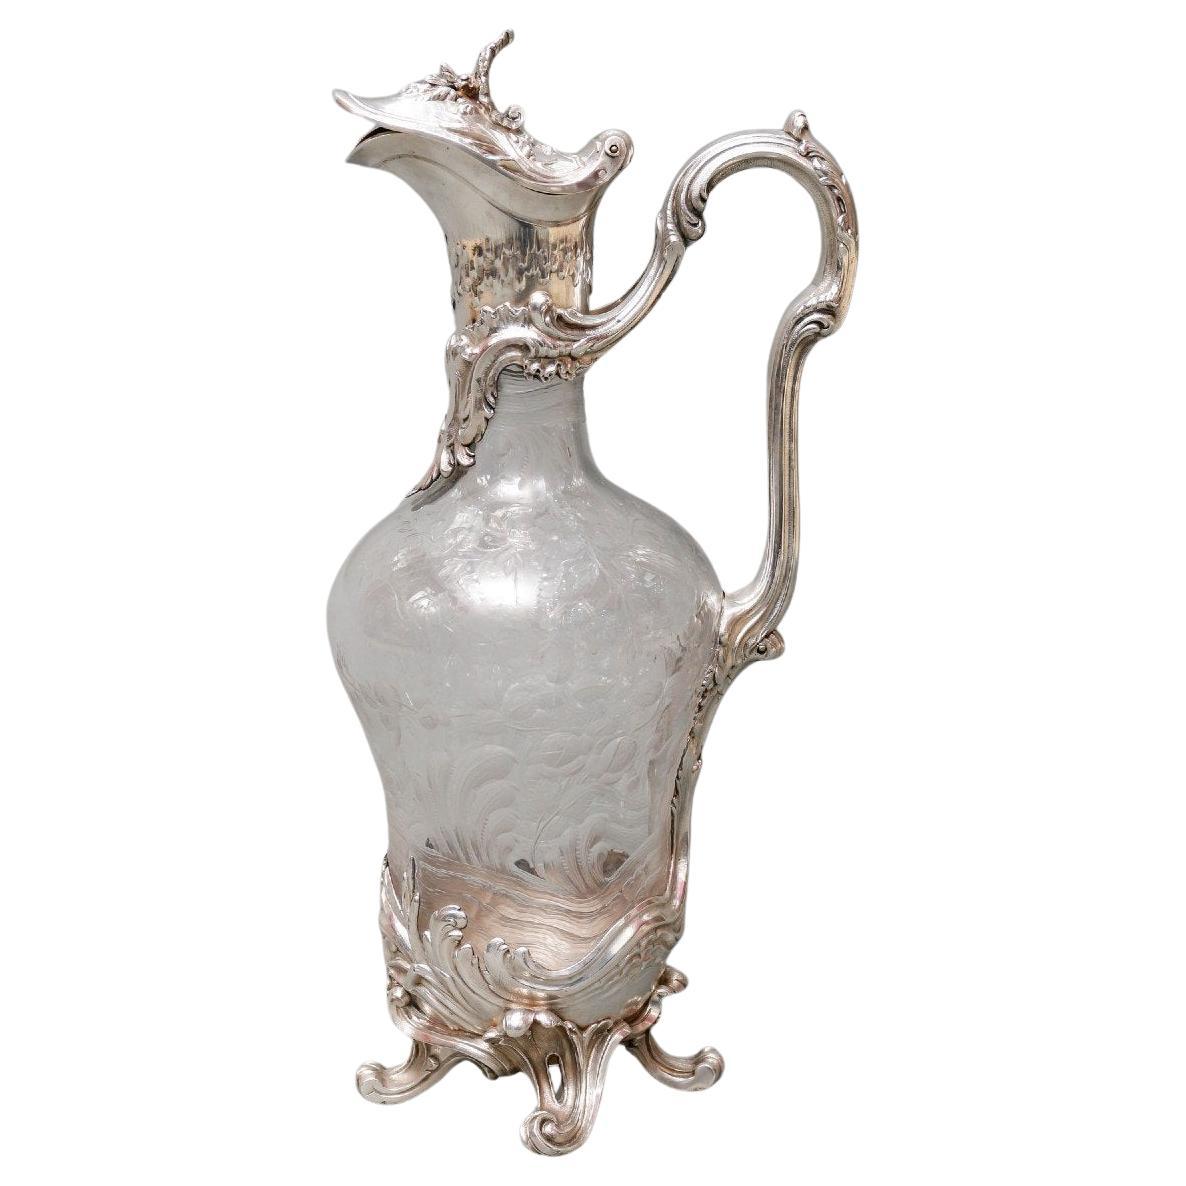 Boin-Taburet - Kanne aus graviertem Kristall und massivem Silber 19. Jahrhundert